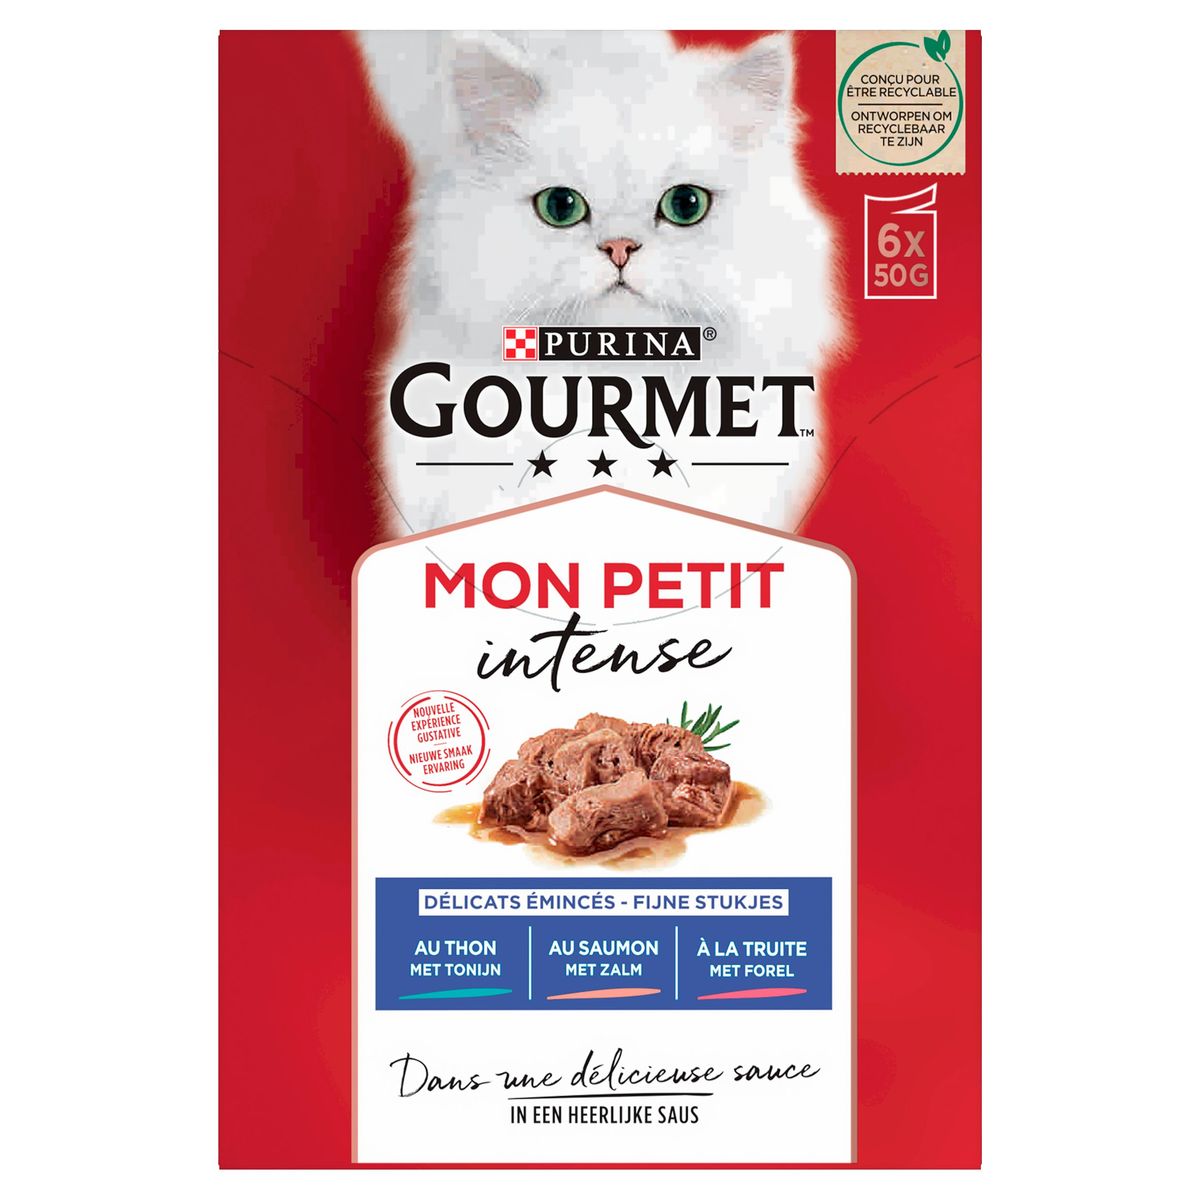 Gourmet Mon Petit met Tonijn, met Zalm, met Forel 6 x 50 g